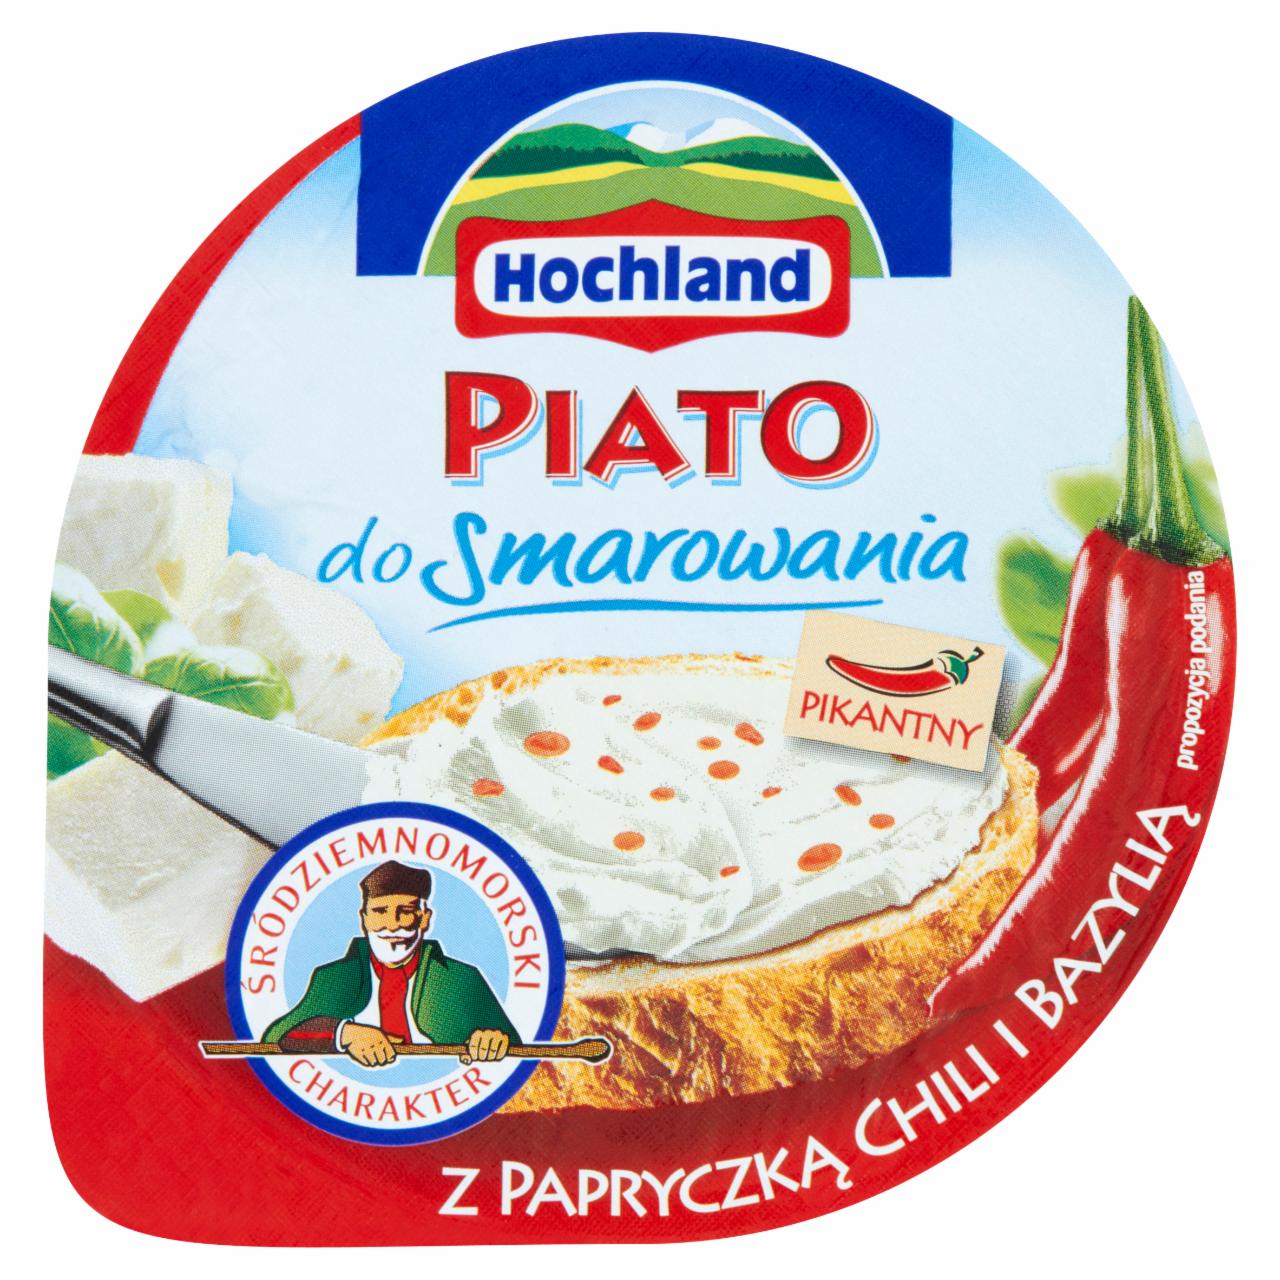 Zdjęcia - Hochland Piato do smarowania z papryczką chili i bazylią Ser typu solankowego 150 g